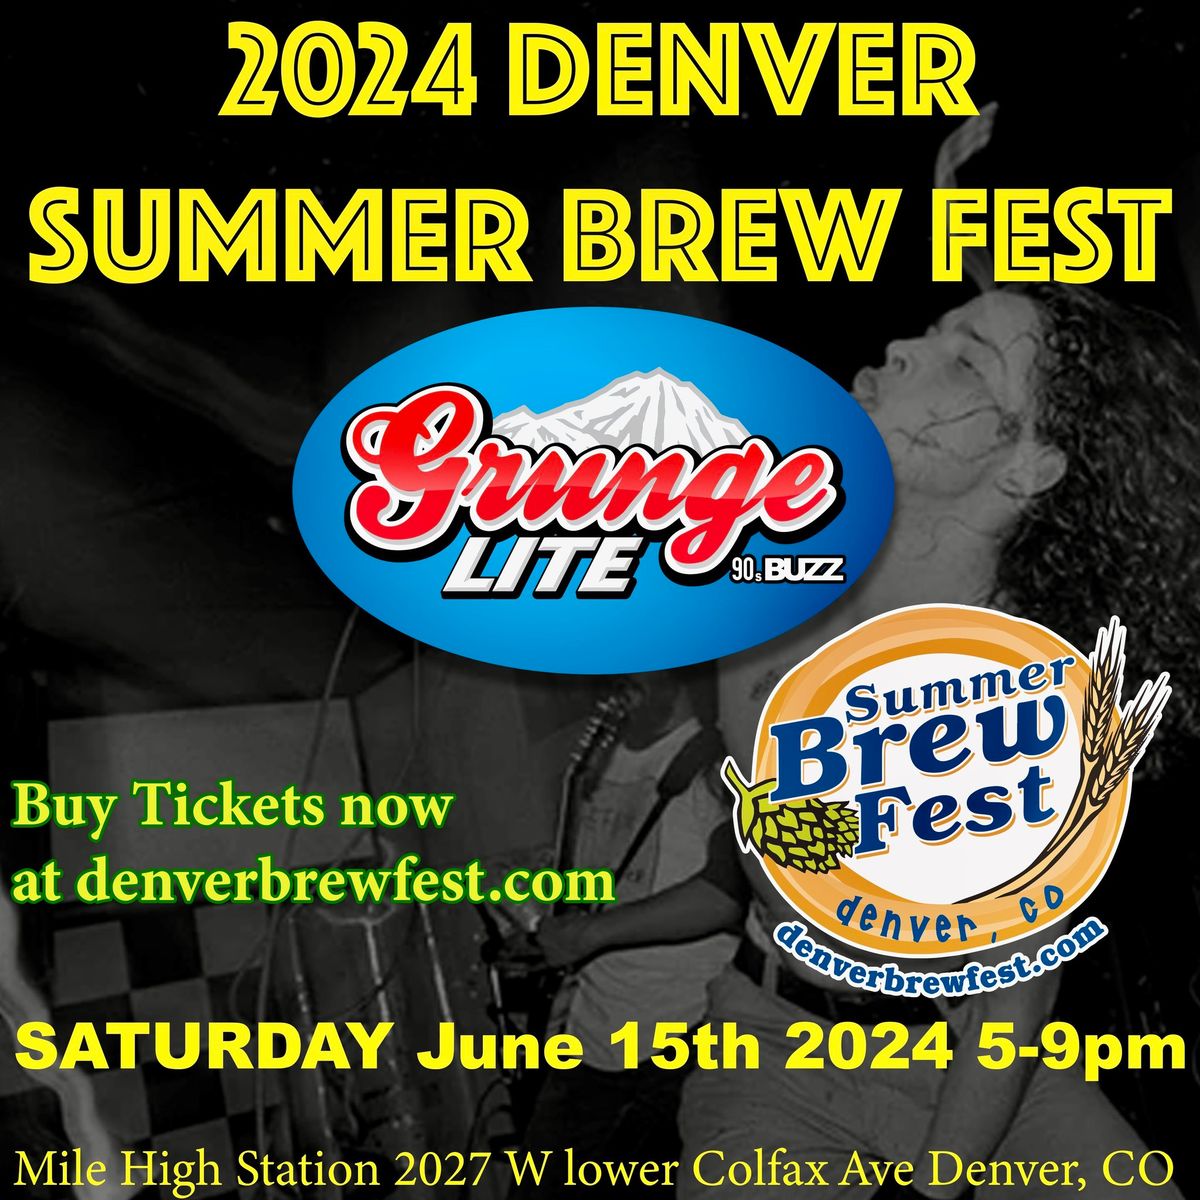 2024 Summer Denver Brew Fest